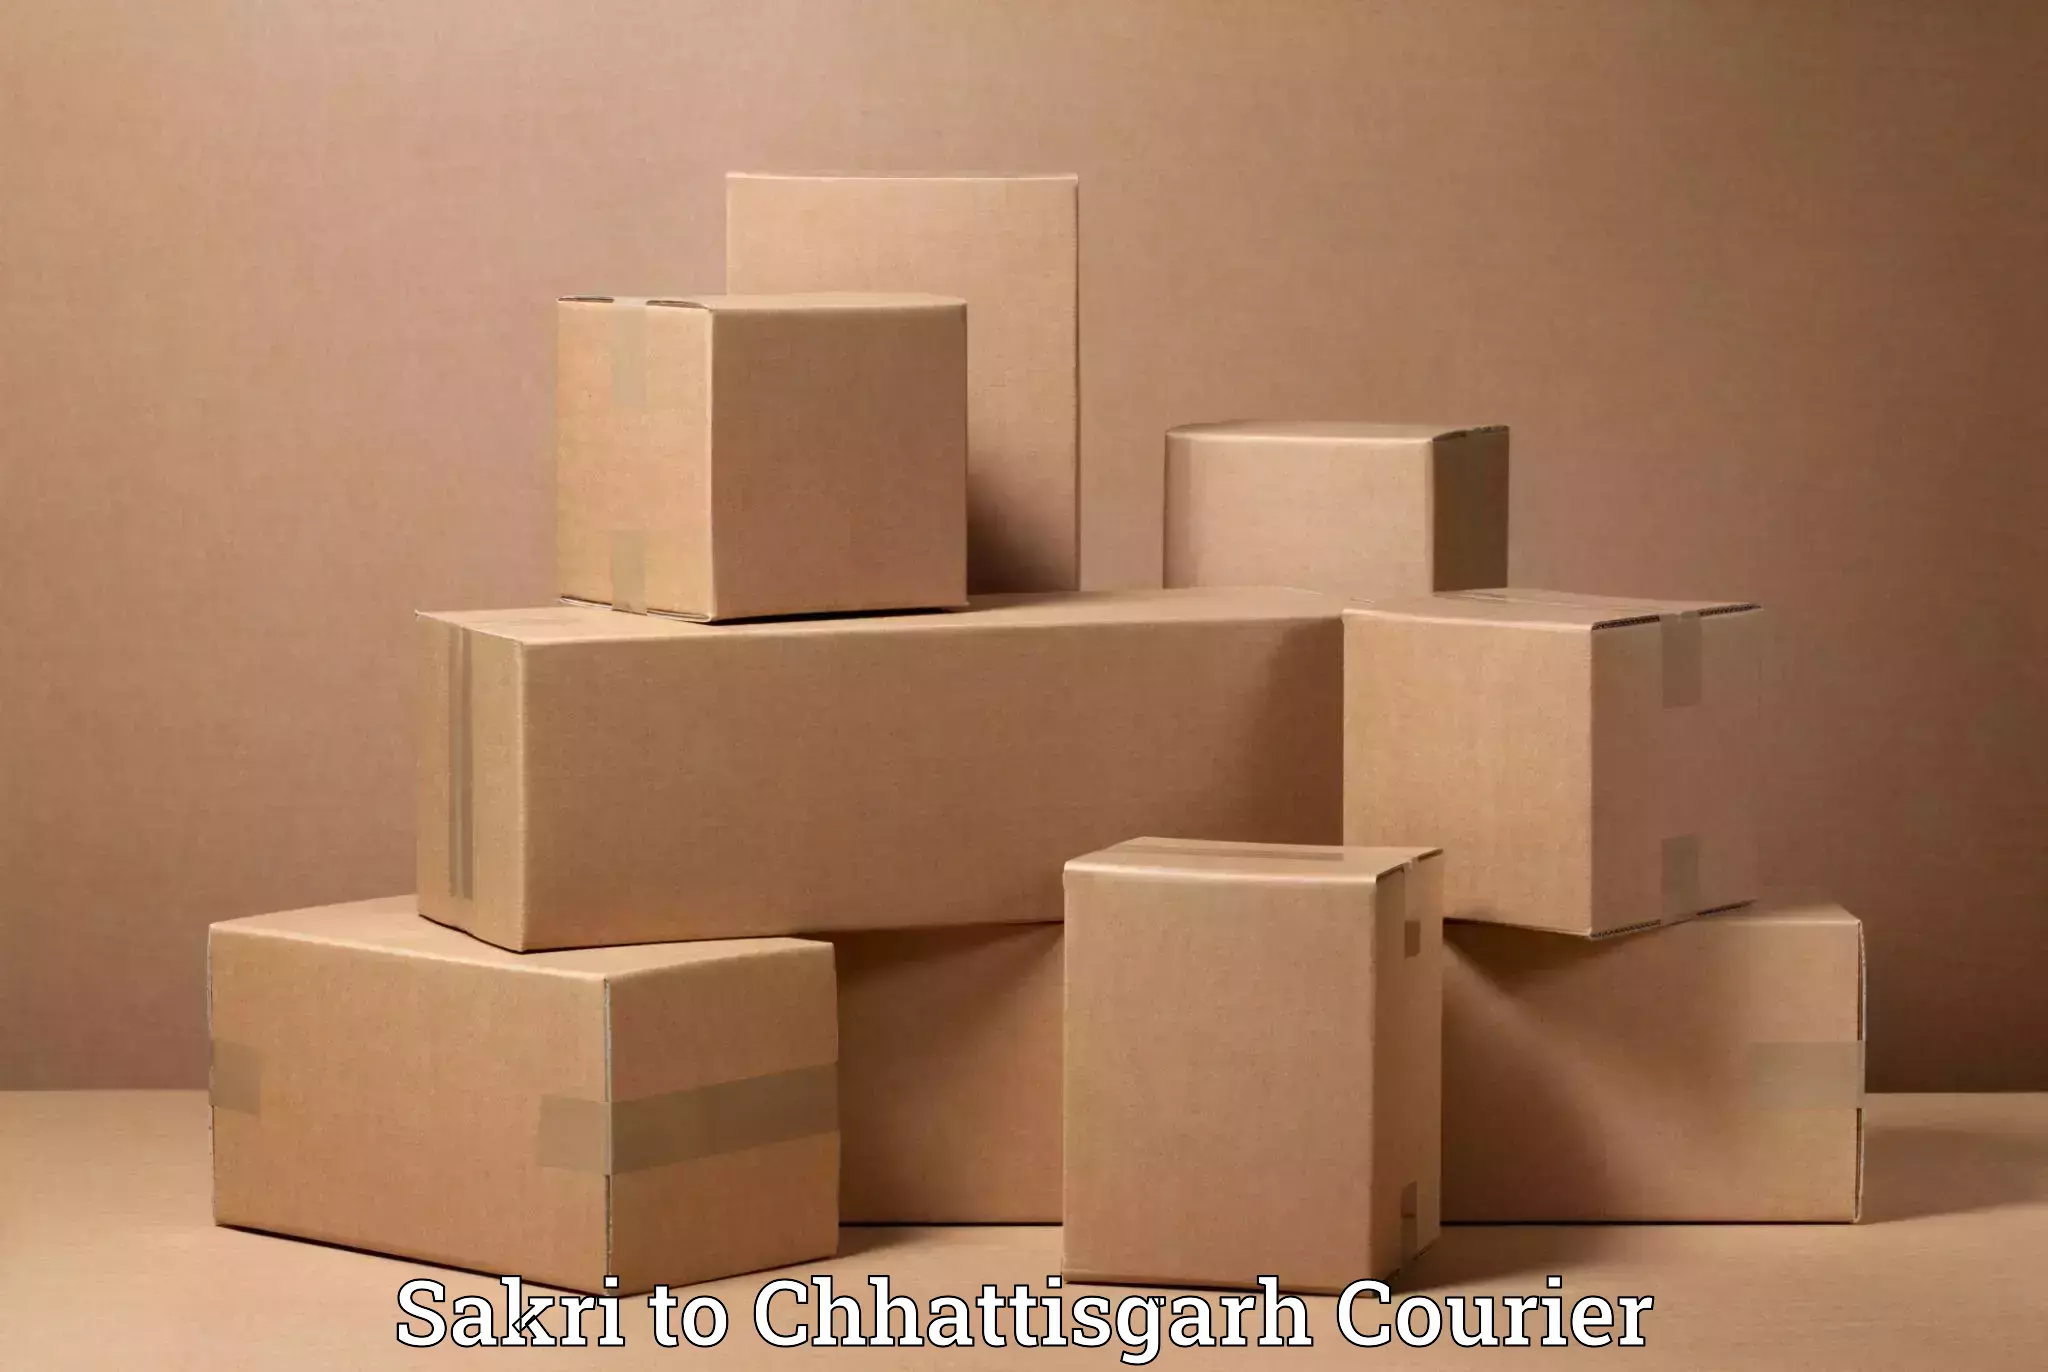 Professional movers Sakri to Chhattisgarh